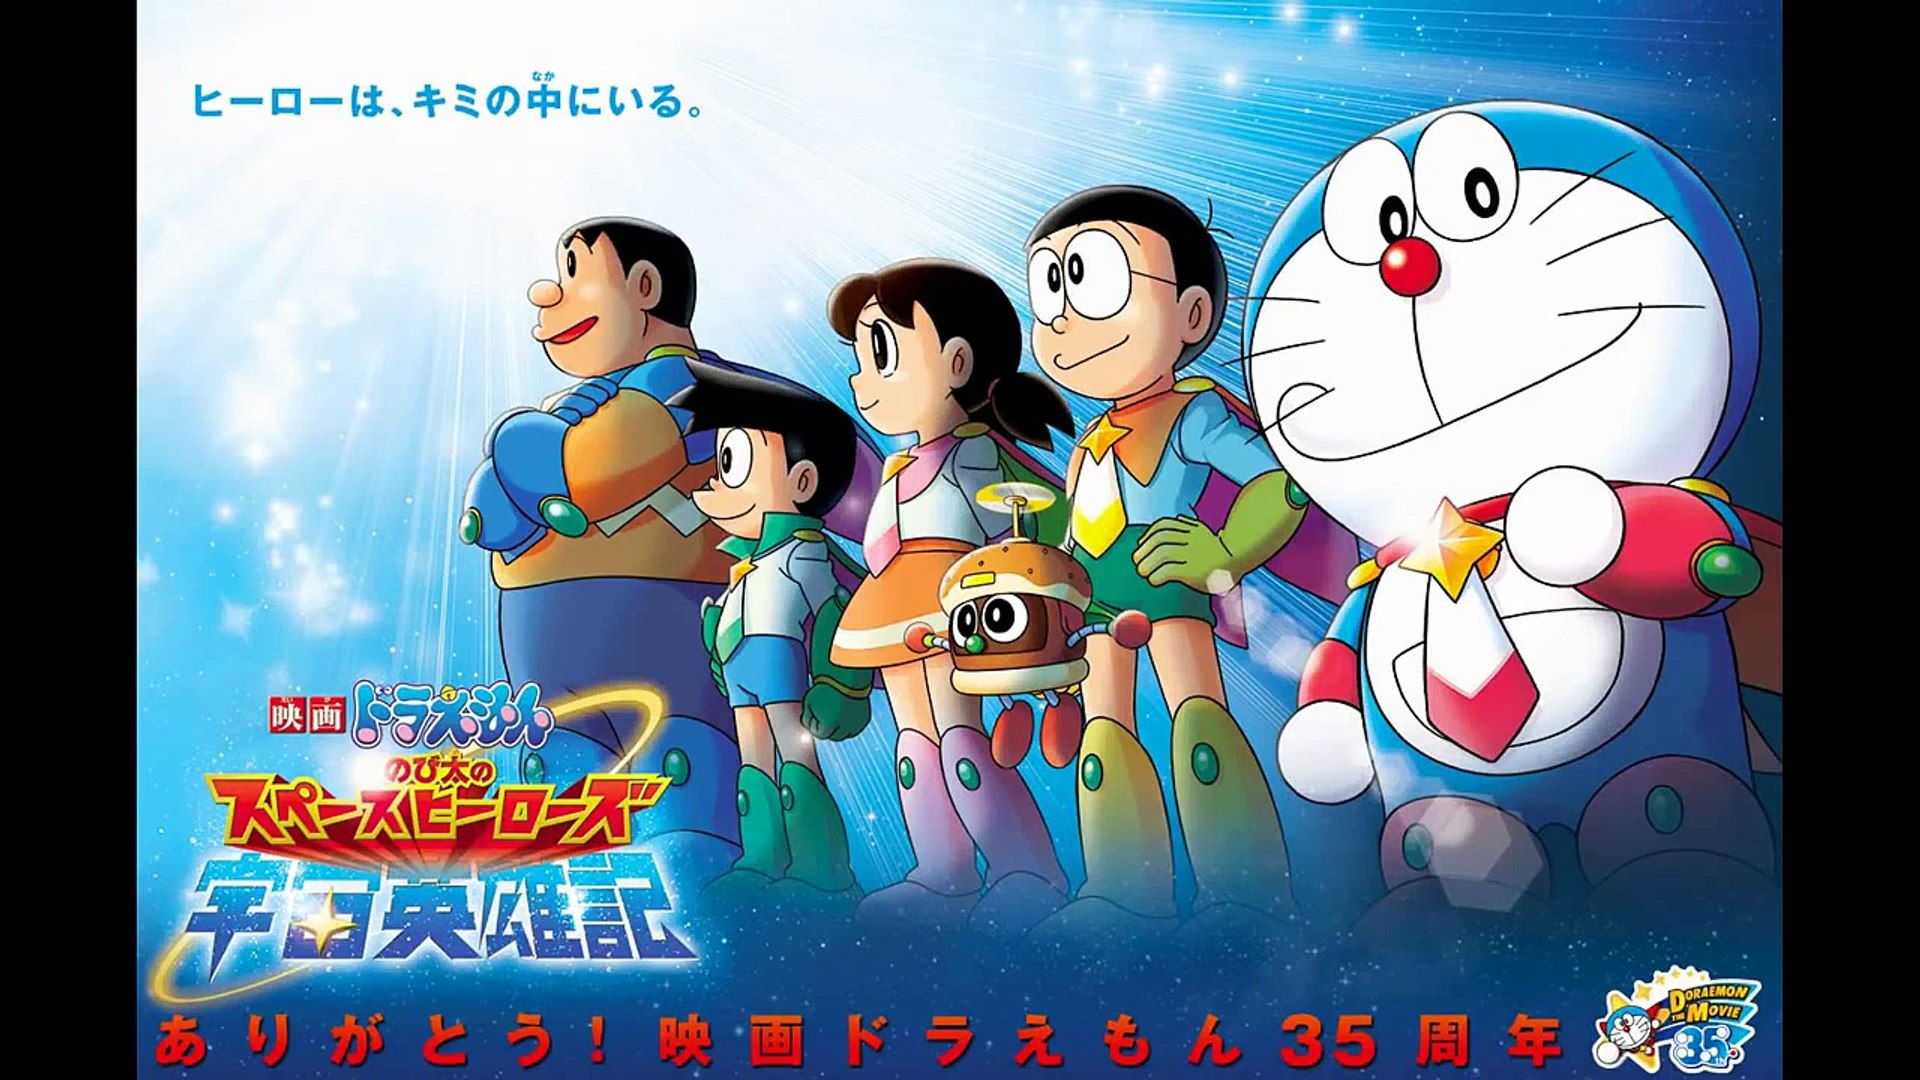 Soundtrack Doraemon 2015 - Nobita và những siêu anh hùng vũ trụ - video  Dailymotion